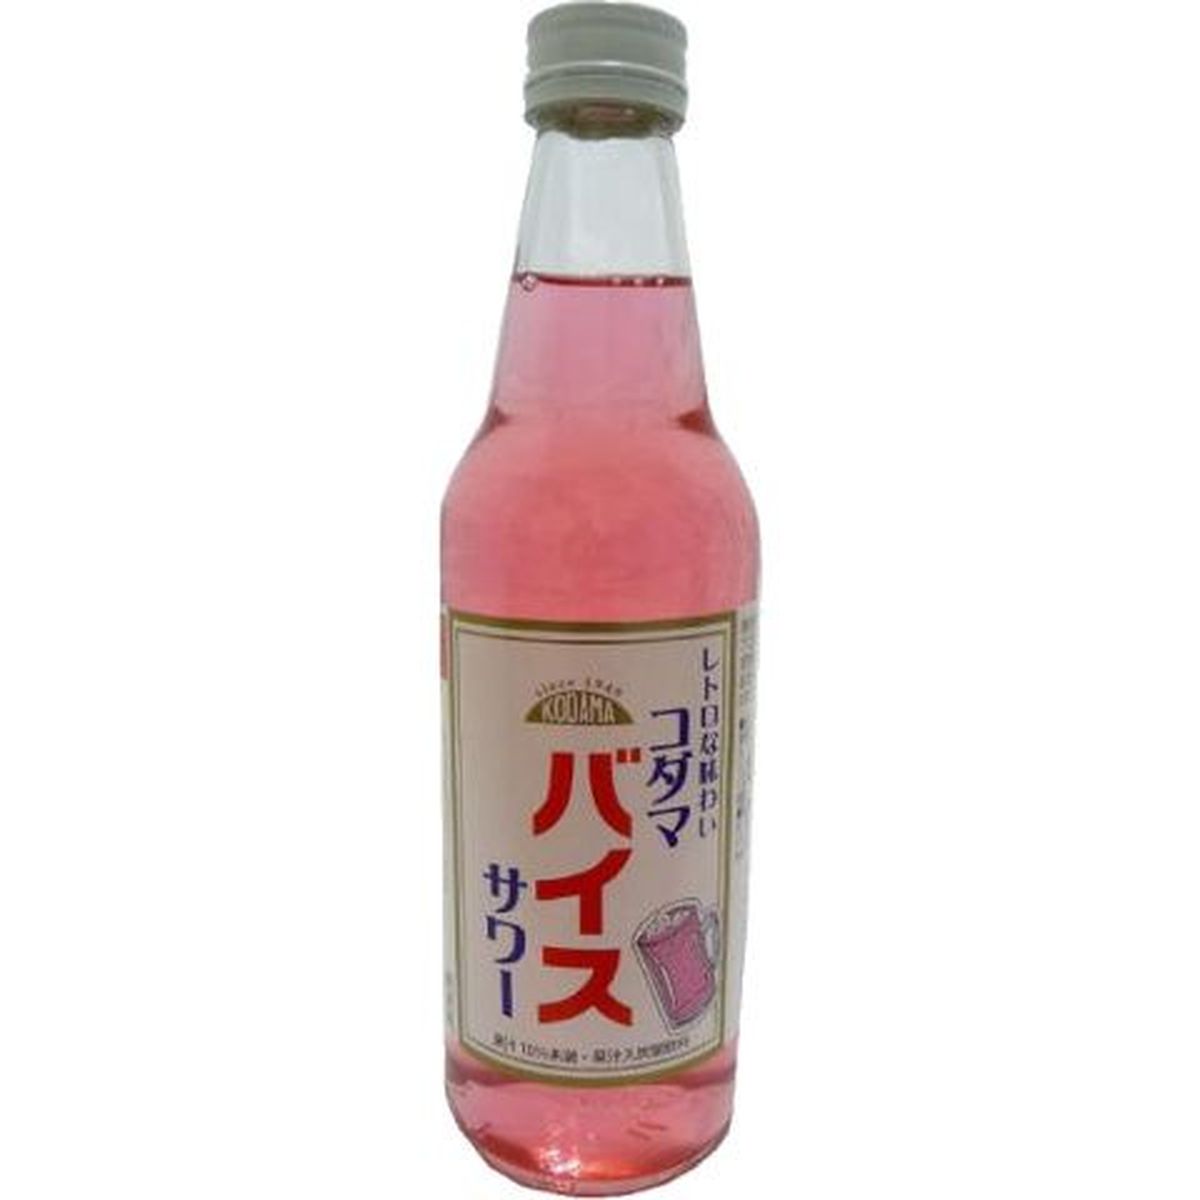 【15個入リ】コダマ飲料 バイスサワー 340ml